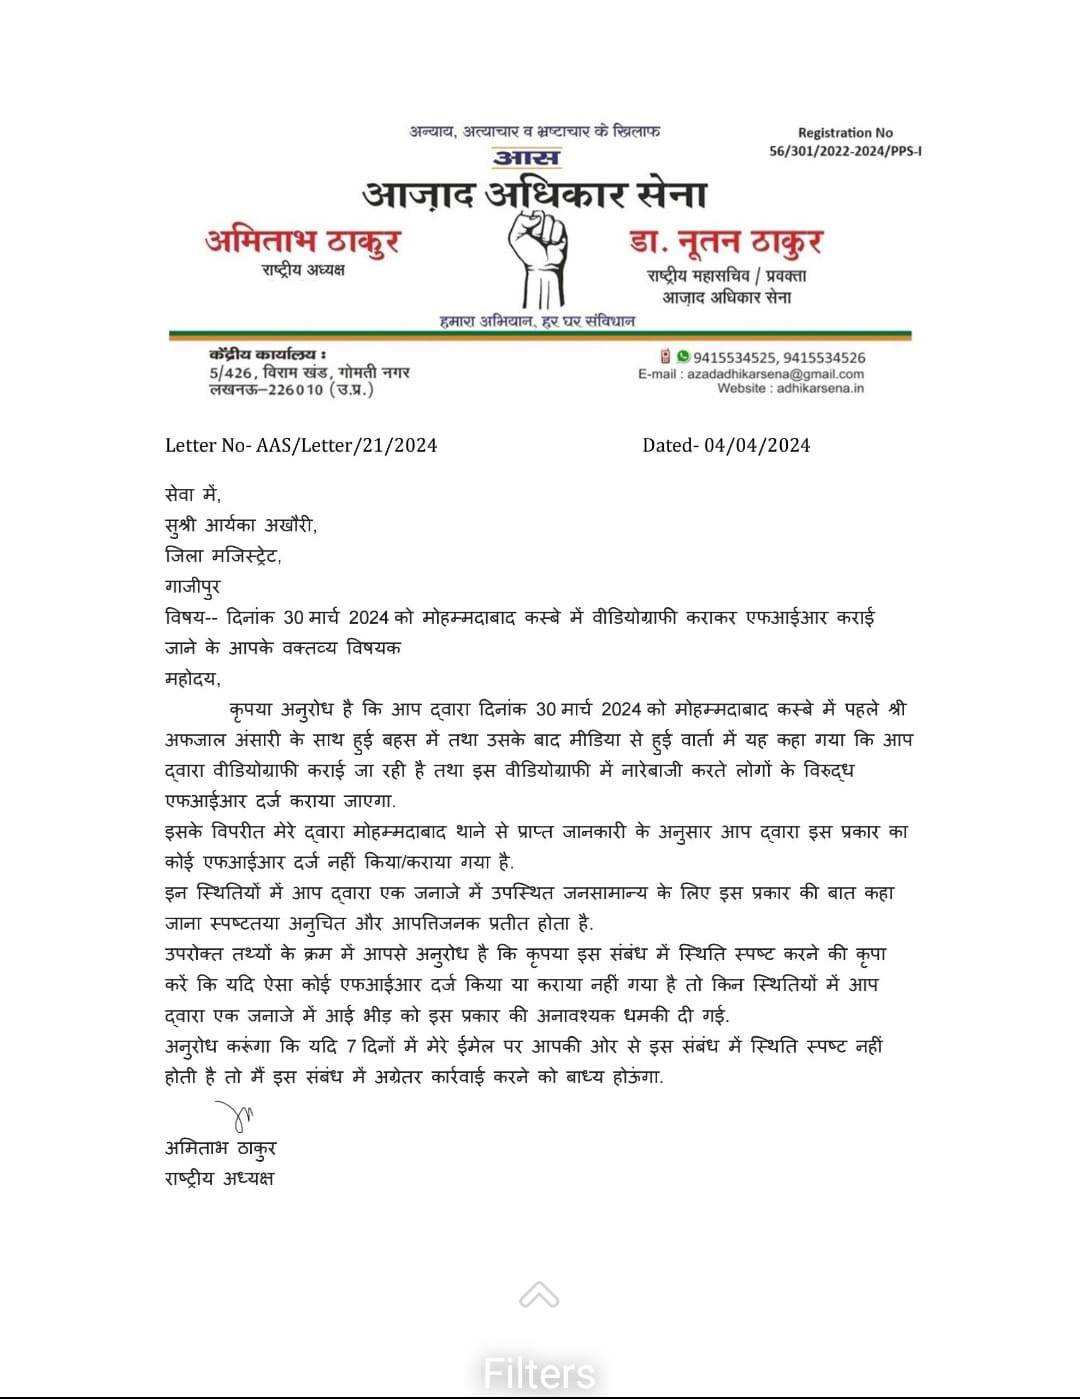 आजाद अधिकार सेना ने डीएम गाजीपुर आर्यका अखौरी को भेजा पत्र, 7 दिन में उत्तर का अनुरोध